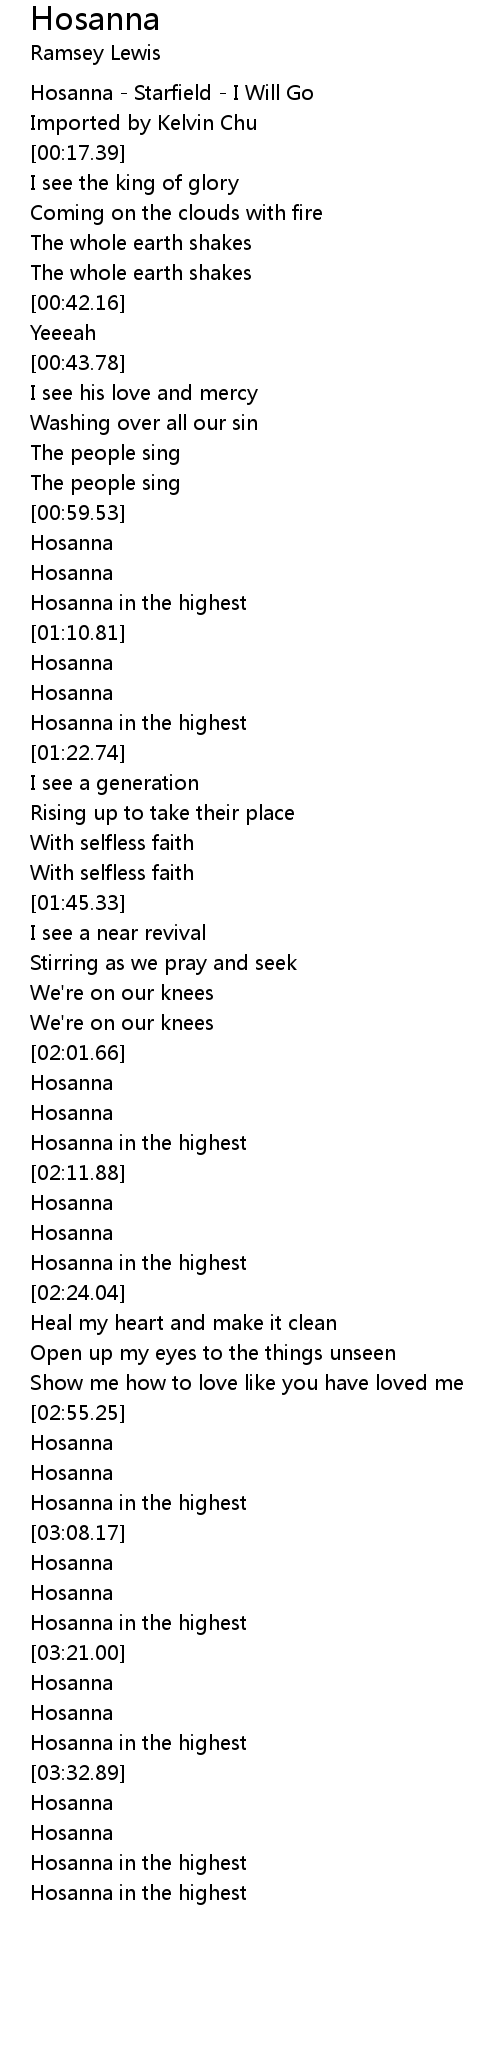 Hosanna Lyrics Follow Lyrics